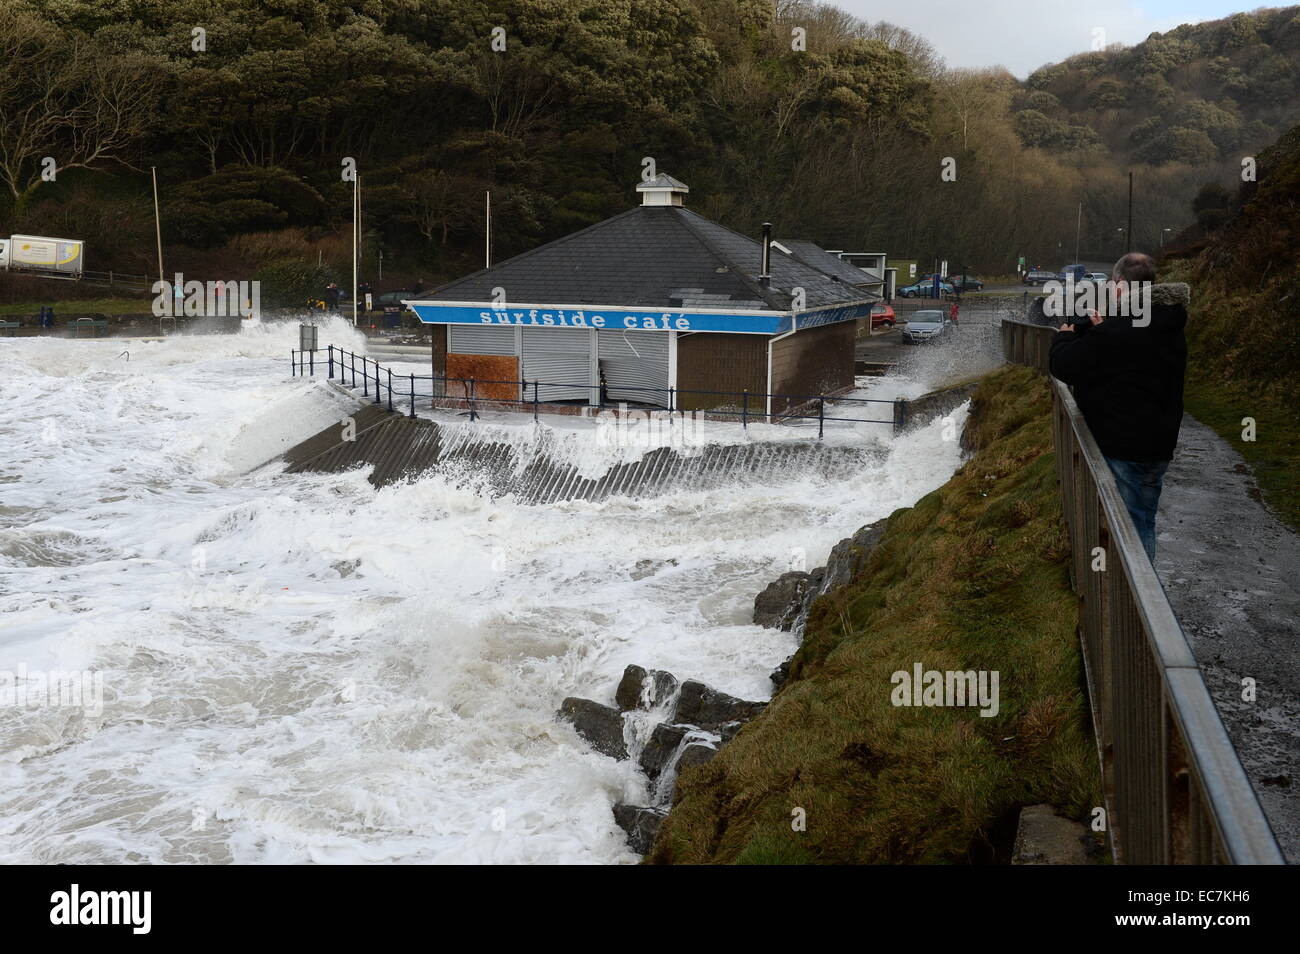 De grosses vagues se briser sur la mer tourbillonnant autour de la défense Surfside Cafe sur Caswell Bay volets rupture préjudiciable à l'intérieur Banque D'Images